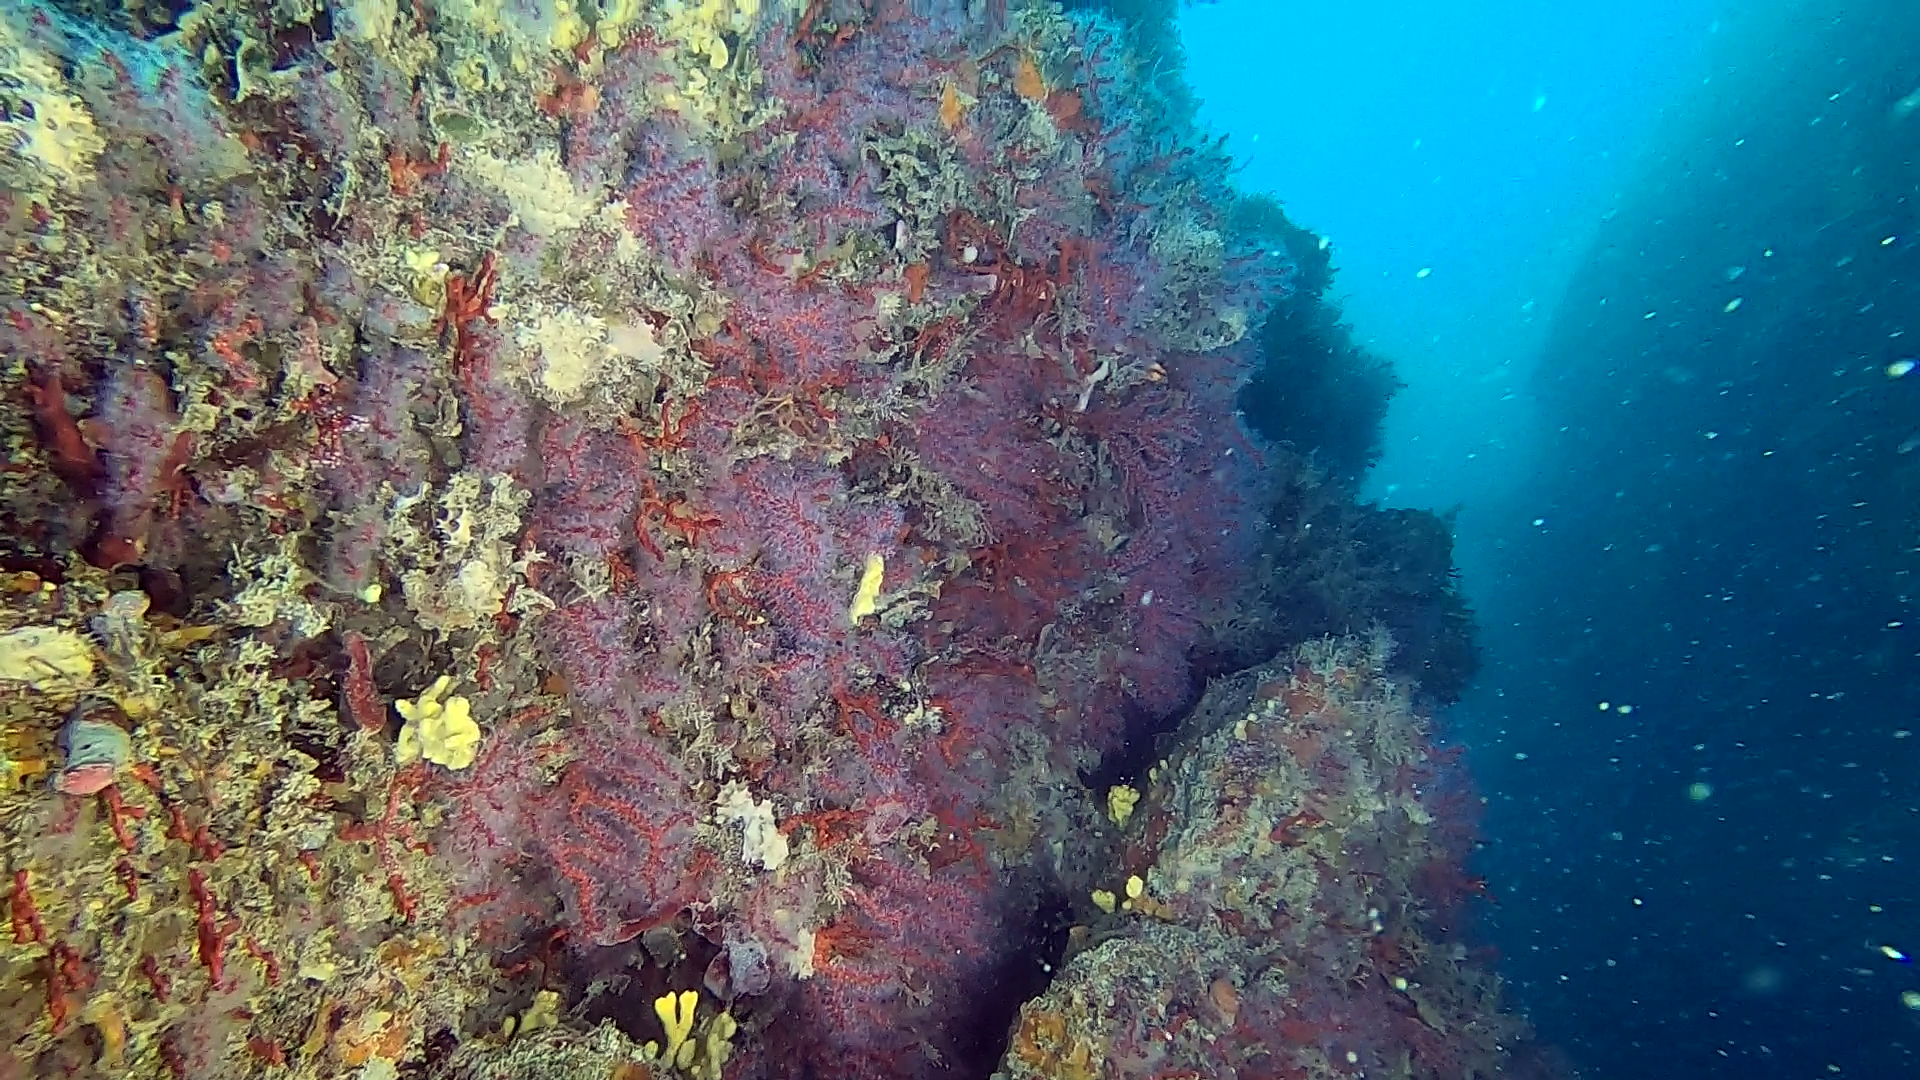 Scogliera coralligena di Calafuria con corallo rosso - Corallium rubrum - Coral reef of Calafuria with Precious coral - www.intotheblue.it